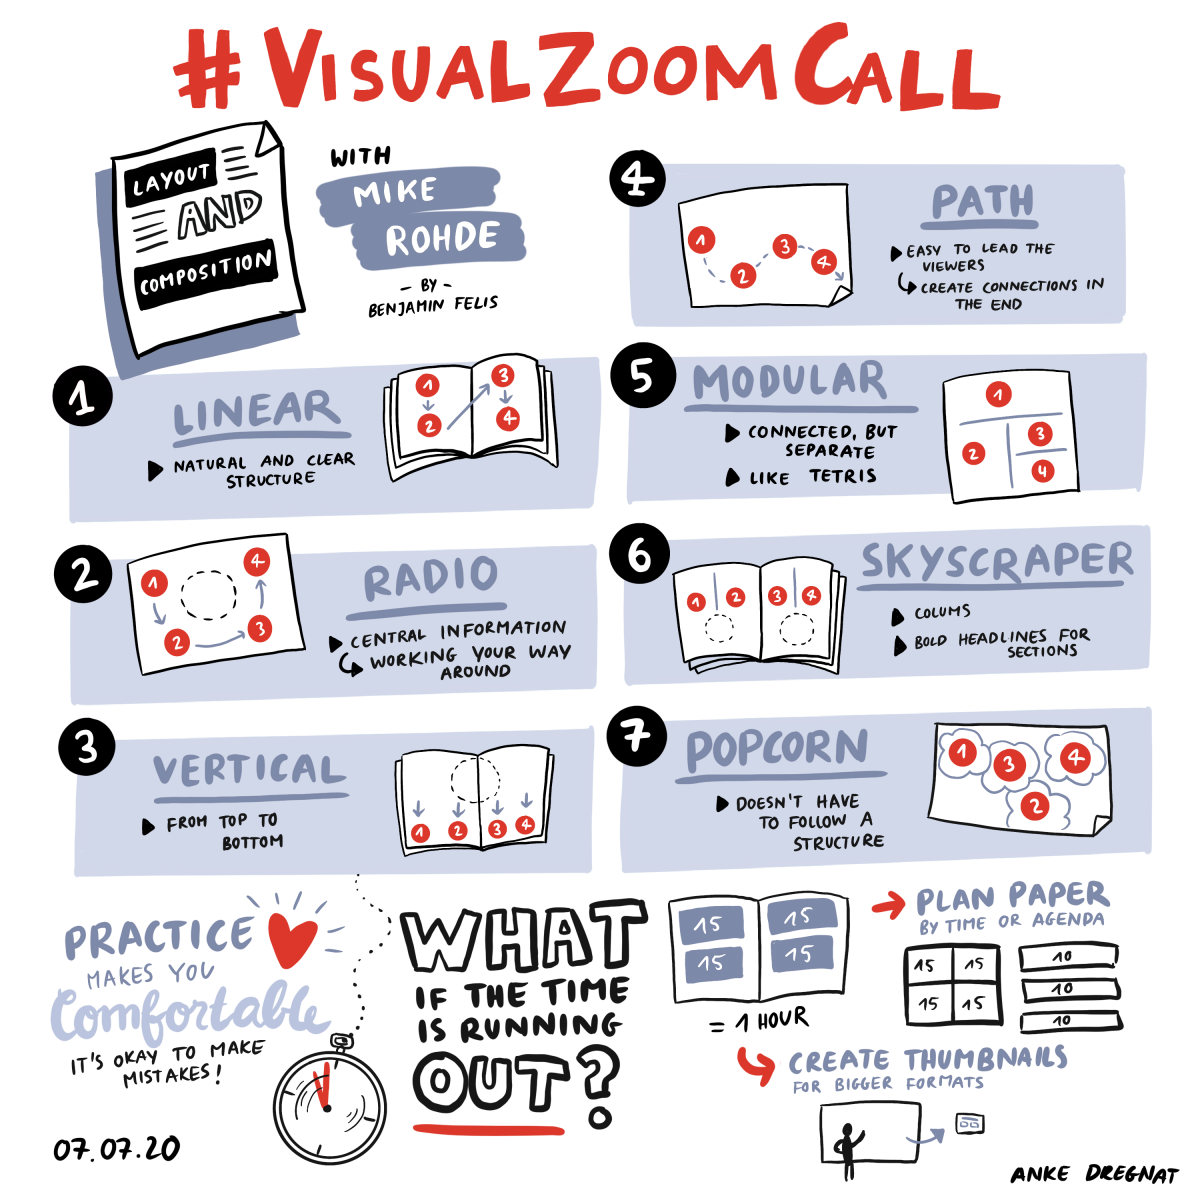 Graphic Recording von Anke Dregnat vom #visualzoomcall mit Mike Rohde zum Thema "Layout und Komposition"